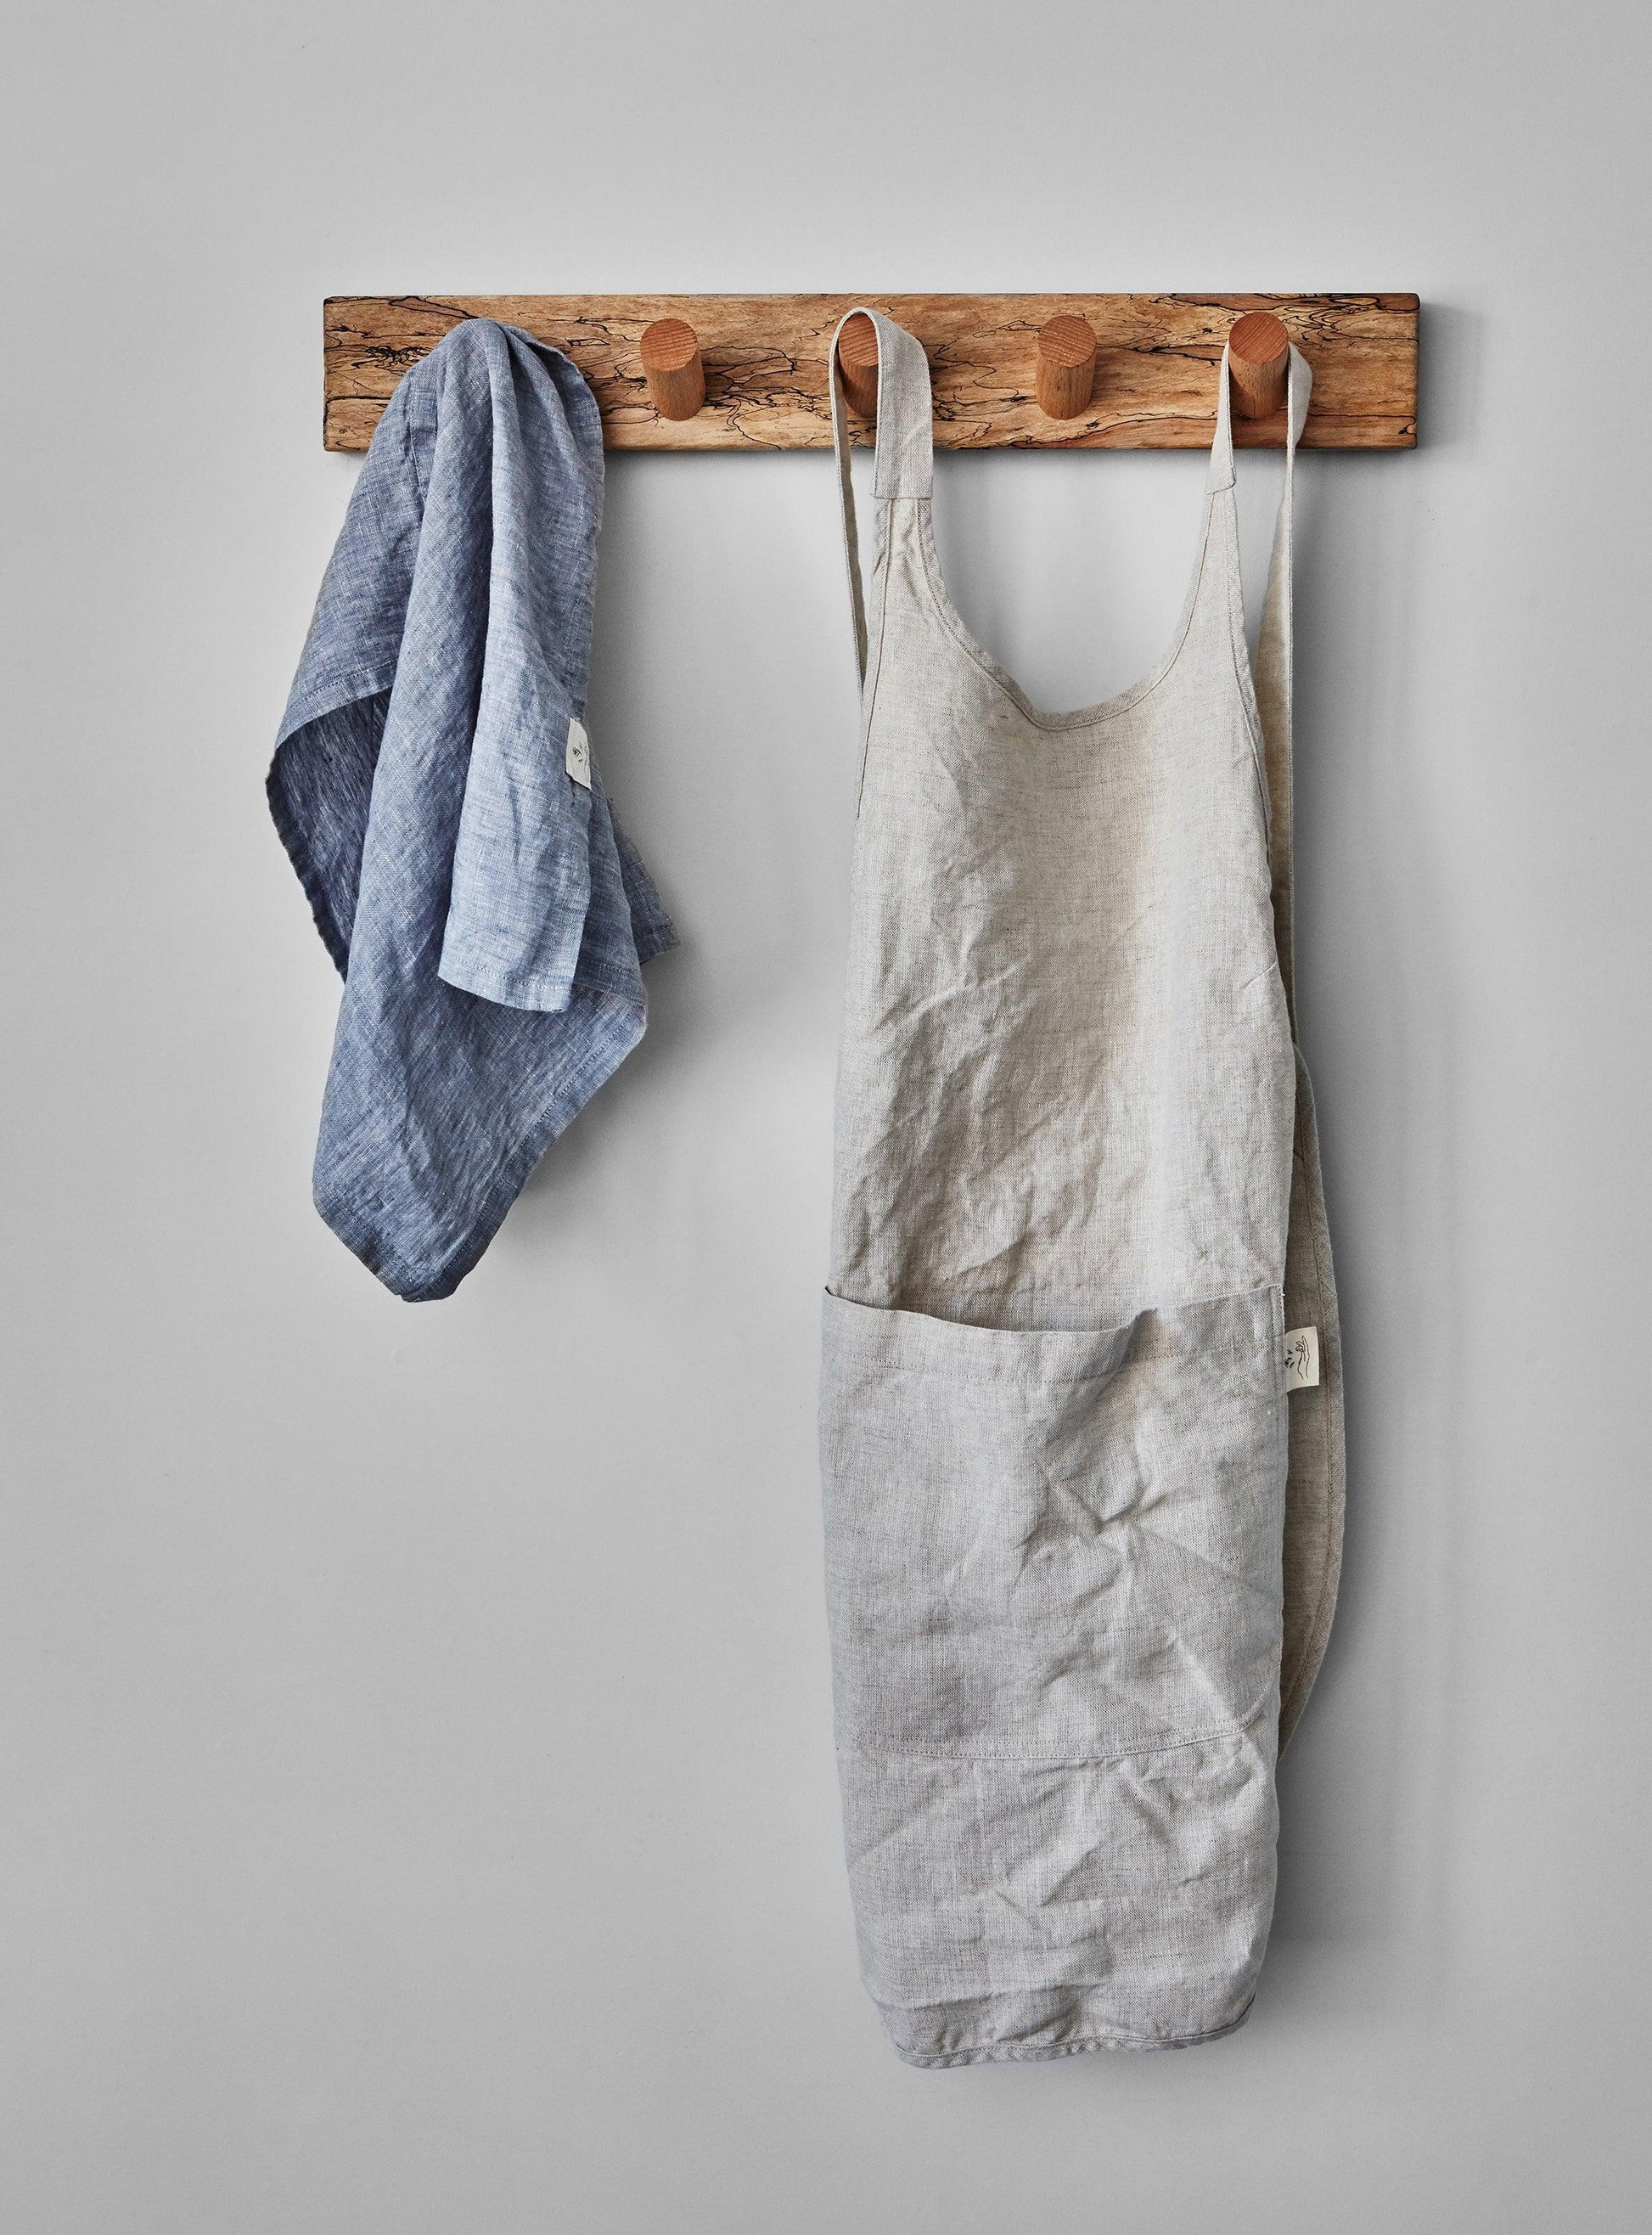 Oat linen apron with blue tea towel